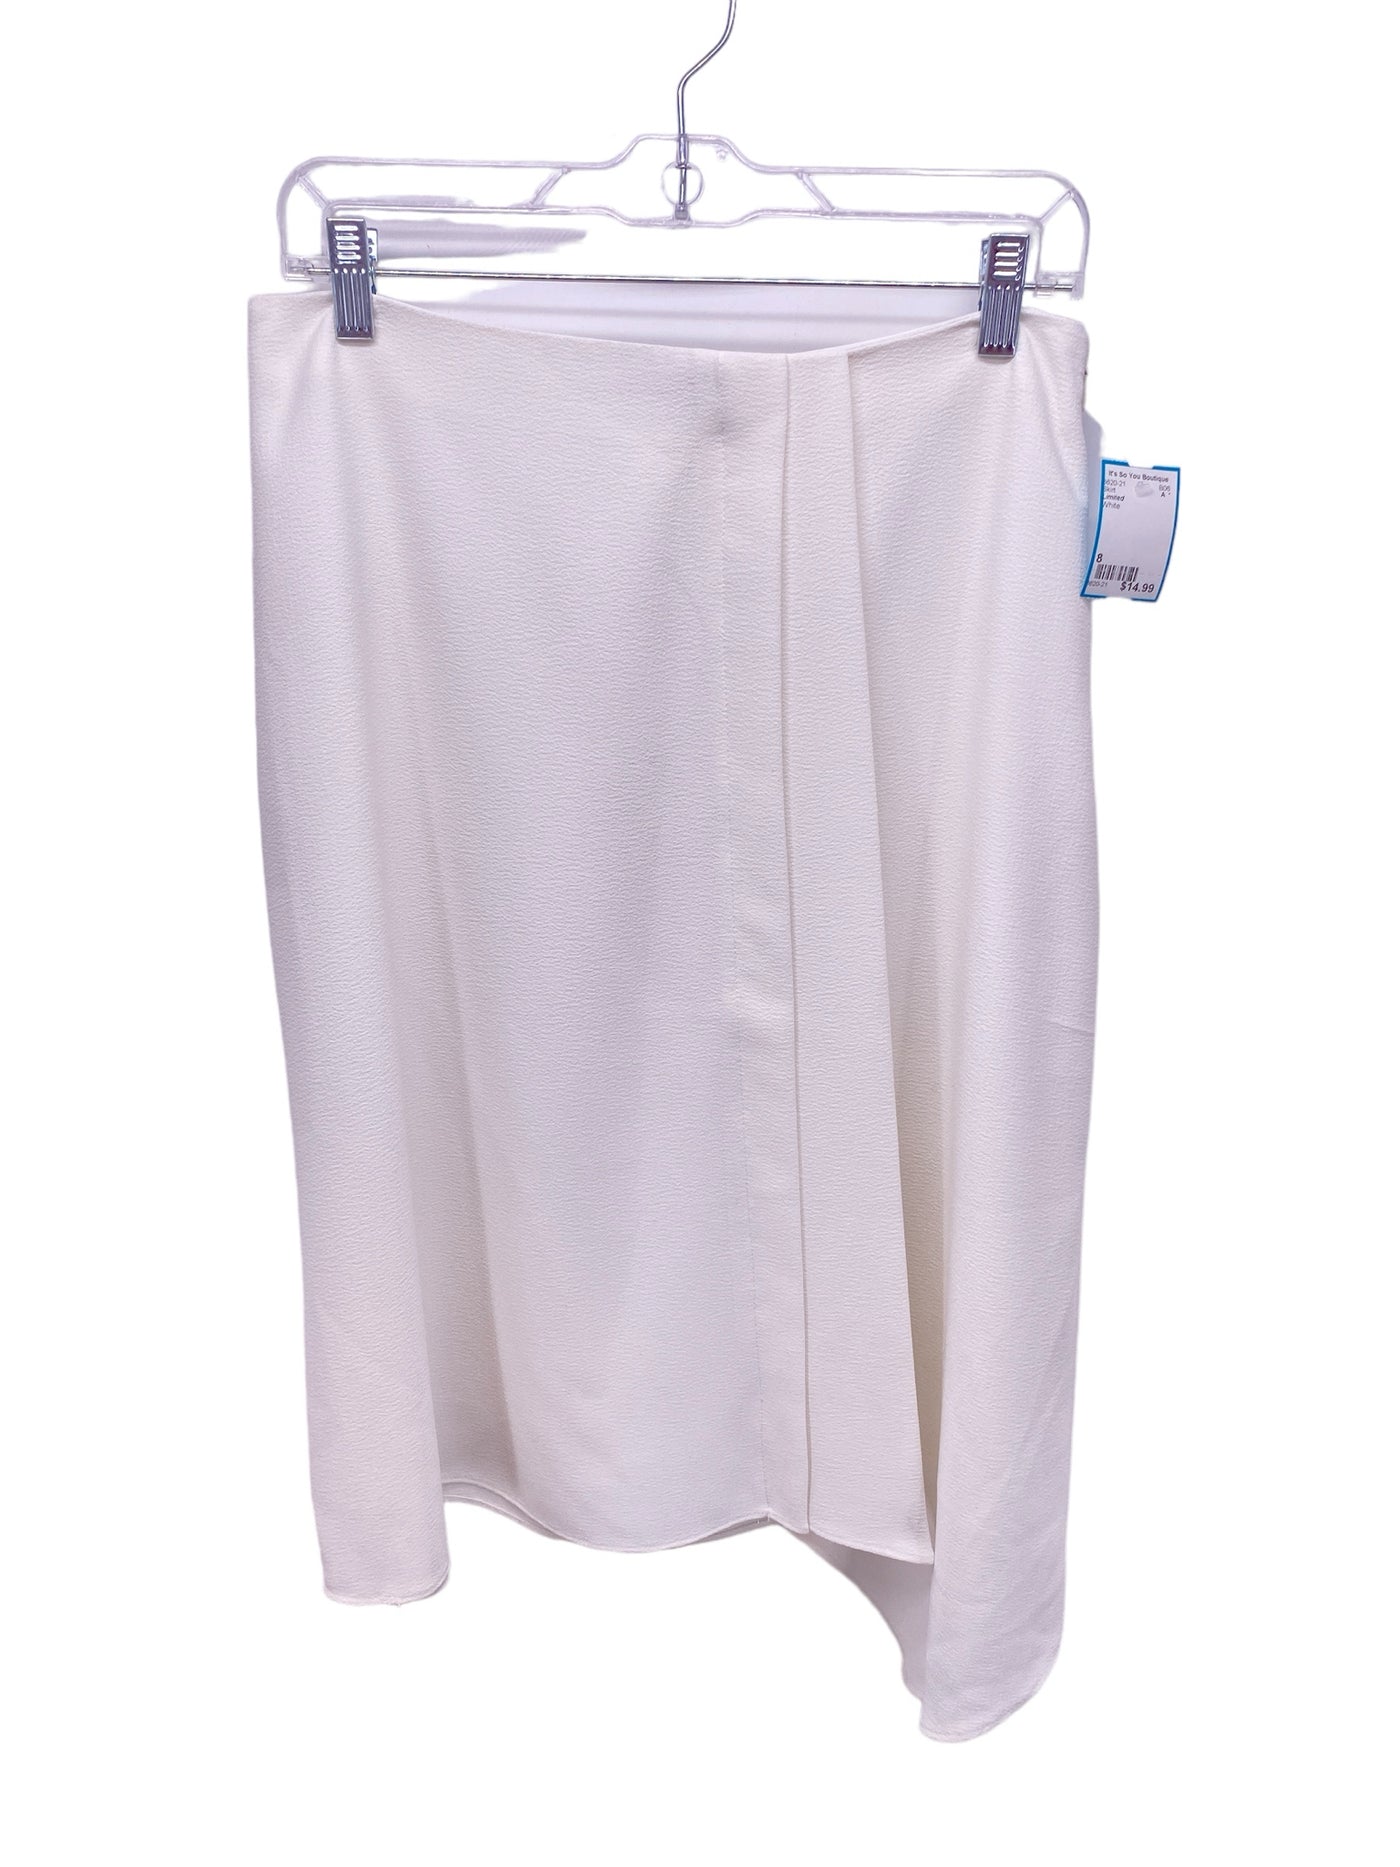 Limited Misses Size 8 White Skirt